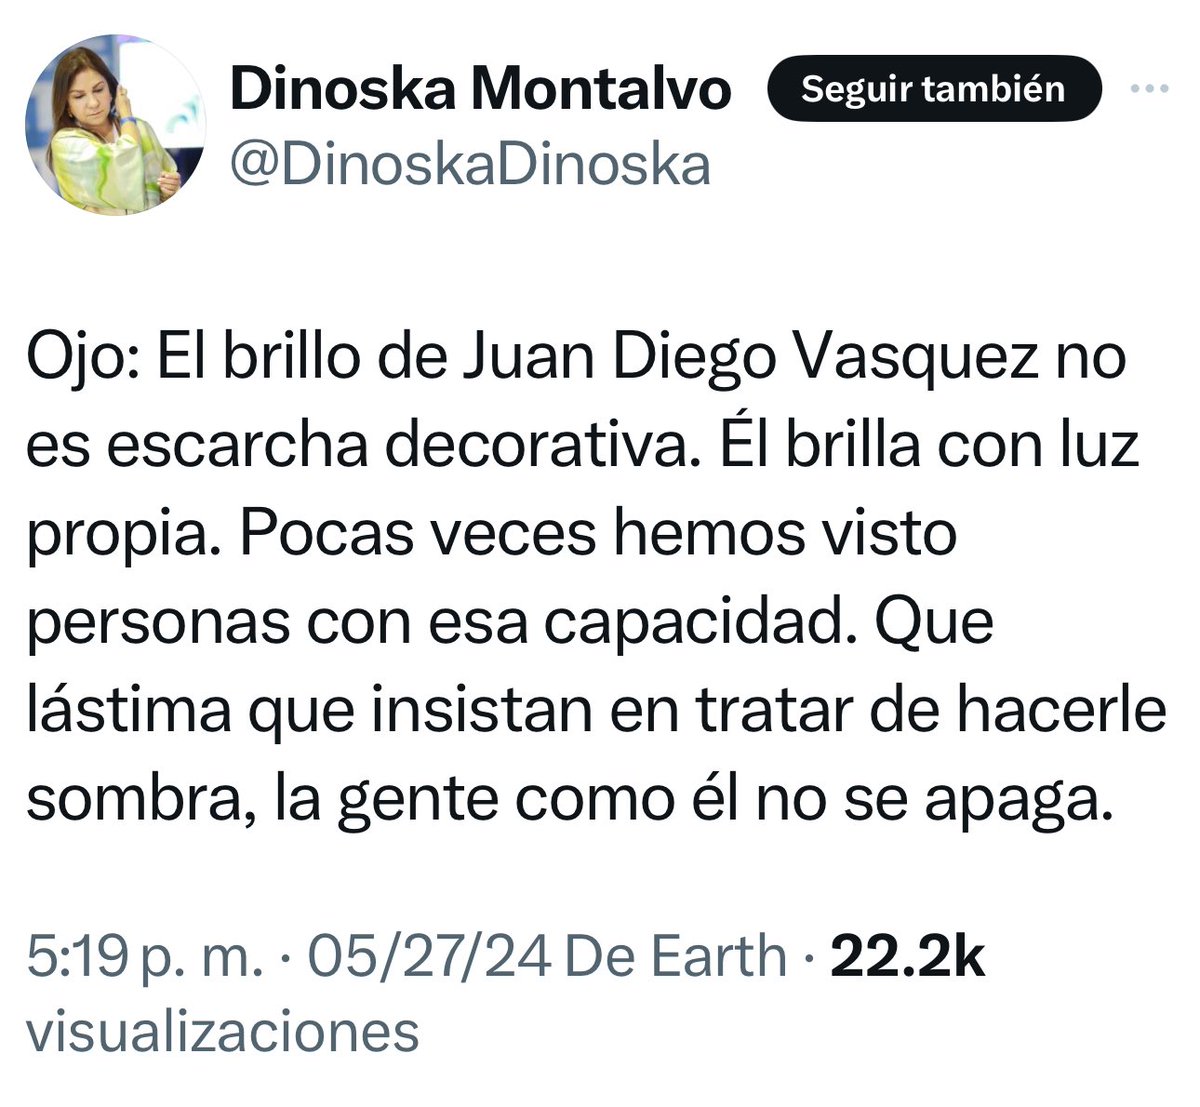 La nueva ministra designada de Gobierno, Dinoska Montalvo, dice lo que piensa sobre Juan Diego Vásquez. Habla claro.